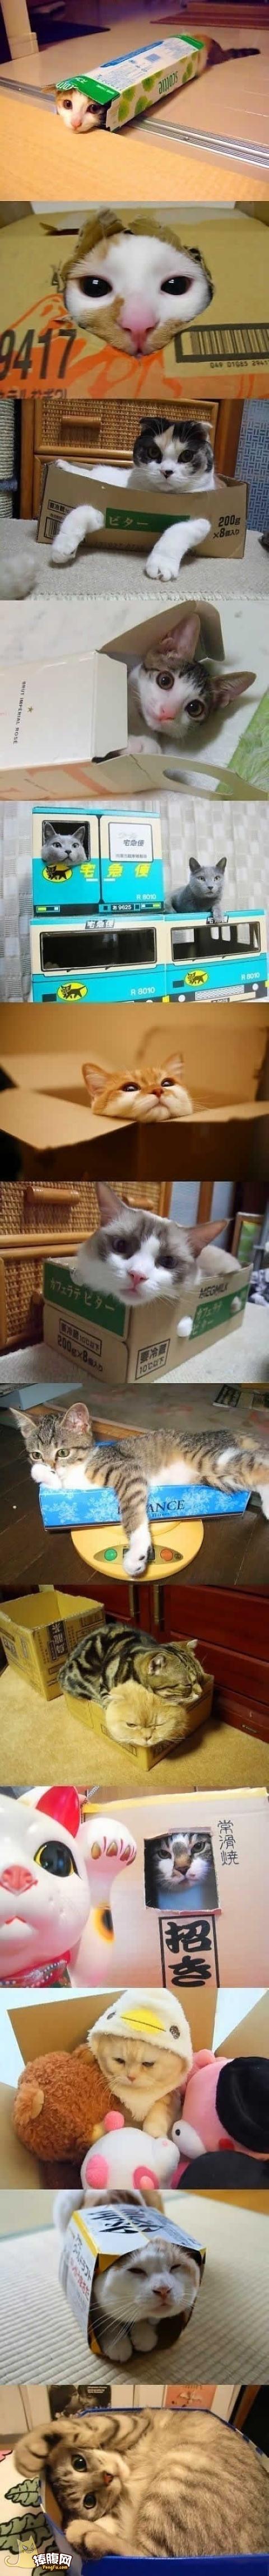 盒子里的猫猫们